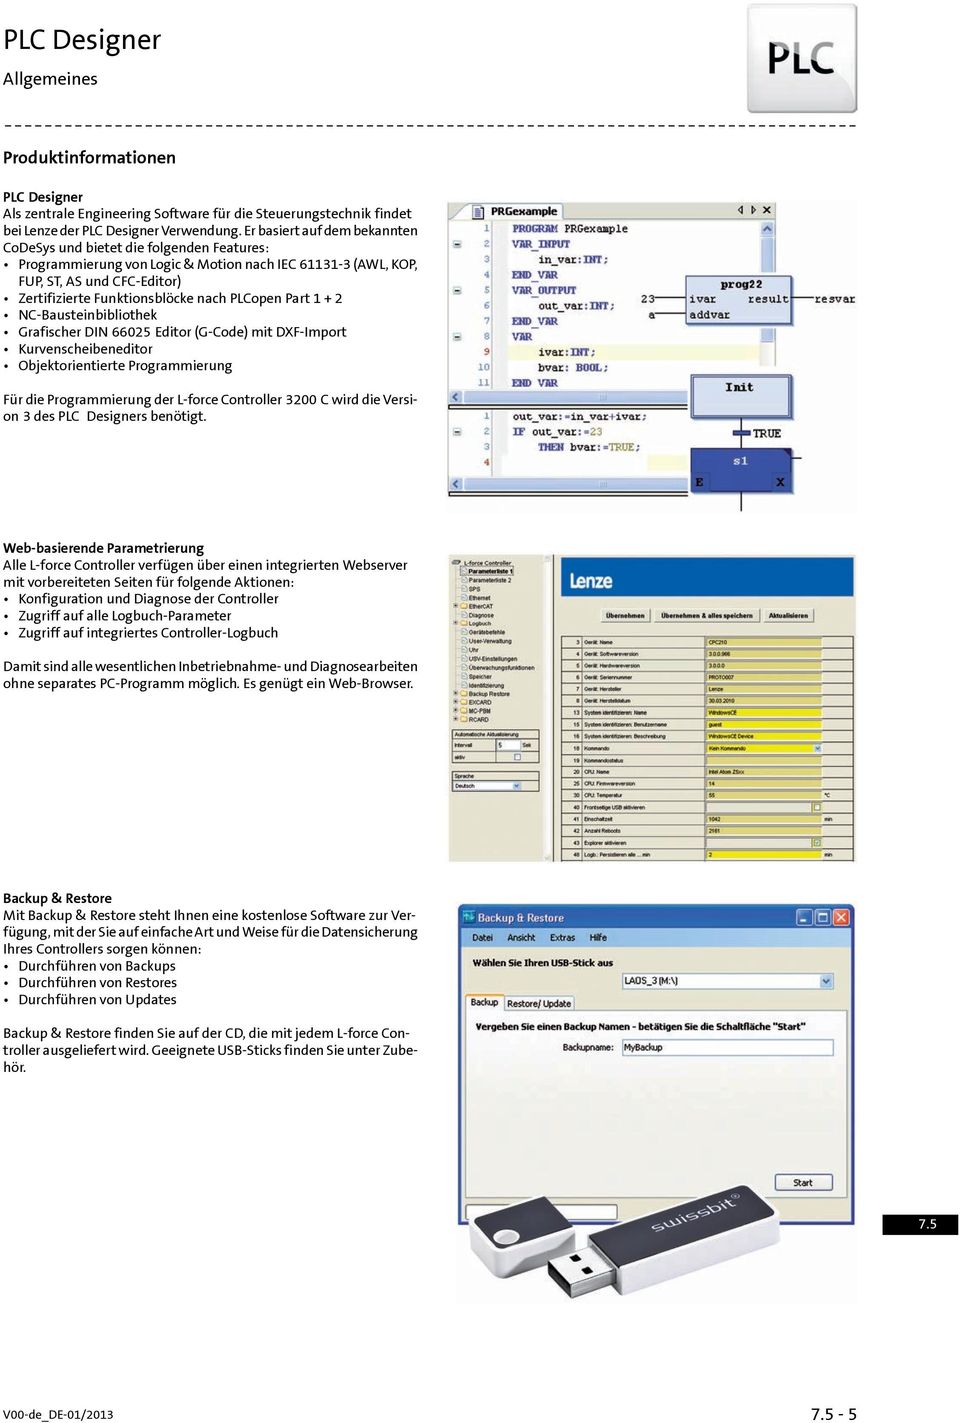 PLCopen Part 1 + 2 NC-Bausteinbibliothek Grafischer DIN 66025 Editor (G-Code) mit DXF-Import Kurvenscheibeneditor Objektorientierte Programmierung Für die Programmierung der L-force Controller 3200 C